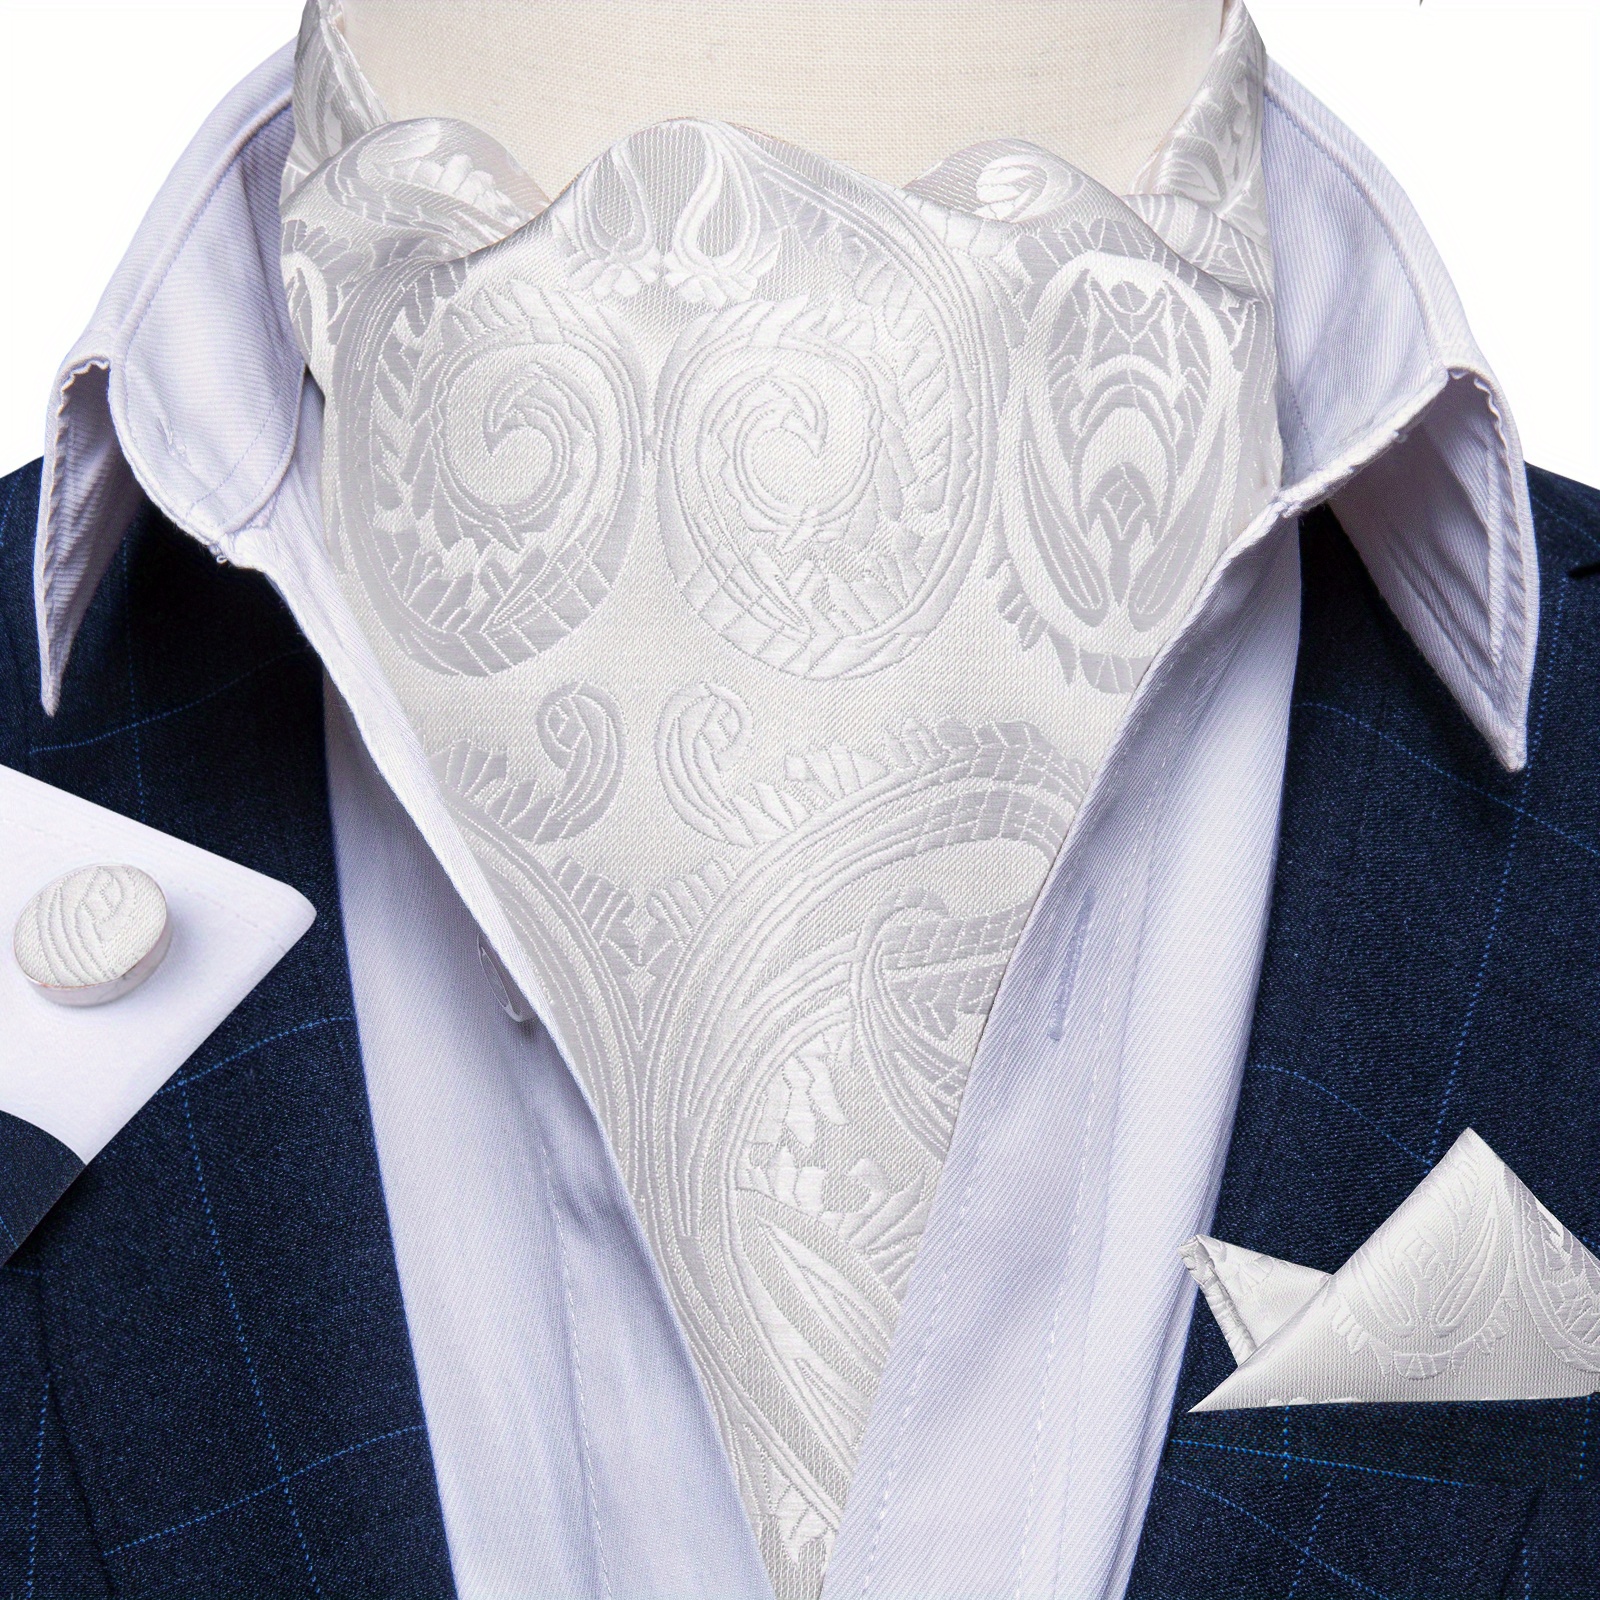  DiBanGu Blue Ascot Ties for Men Cravat Tie and Pocket